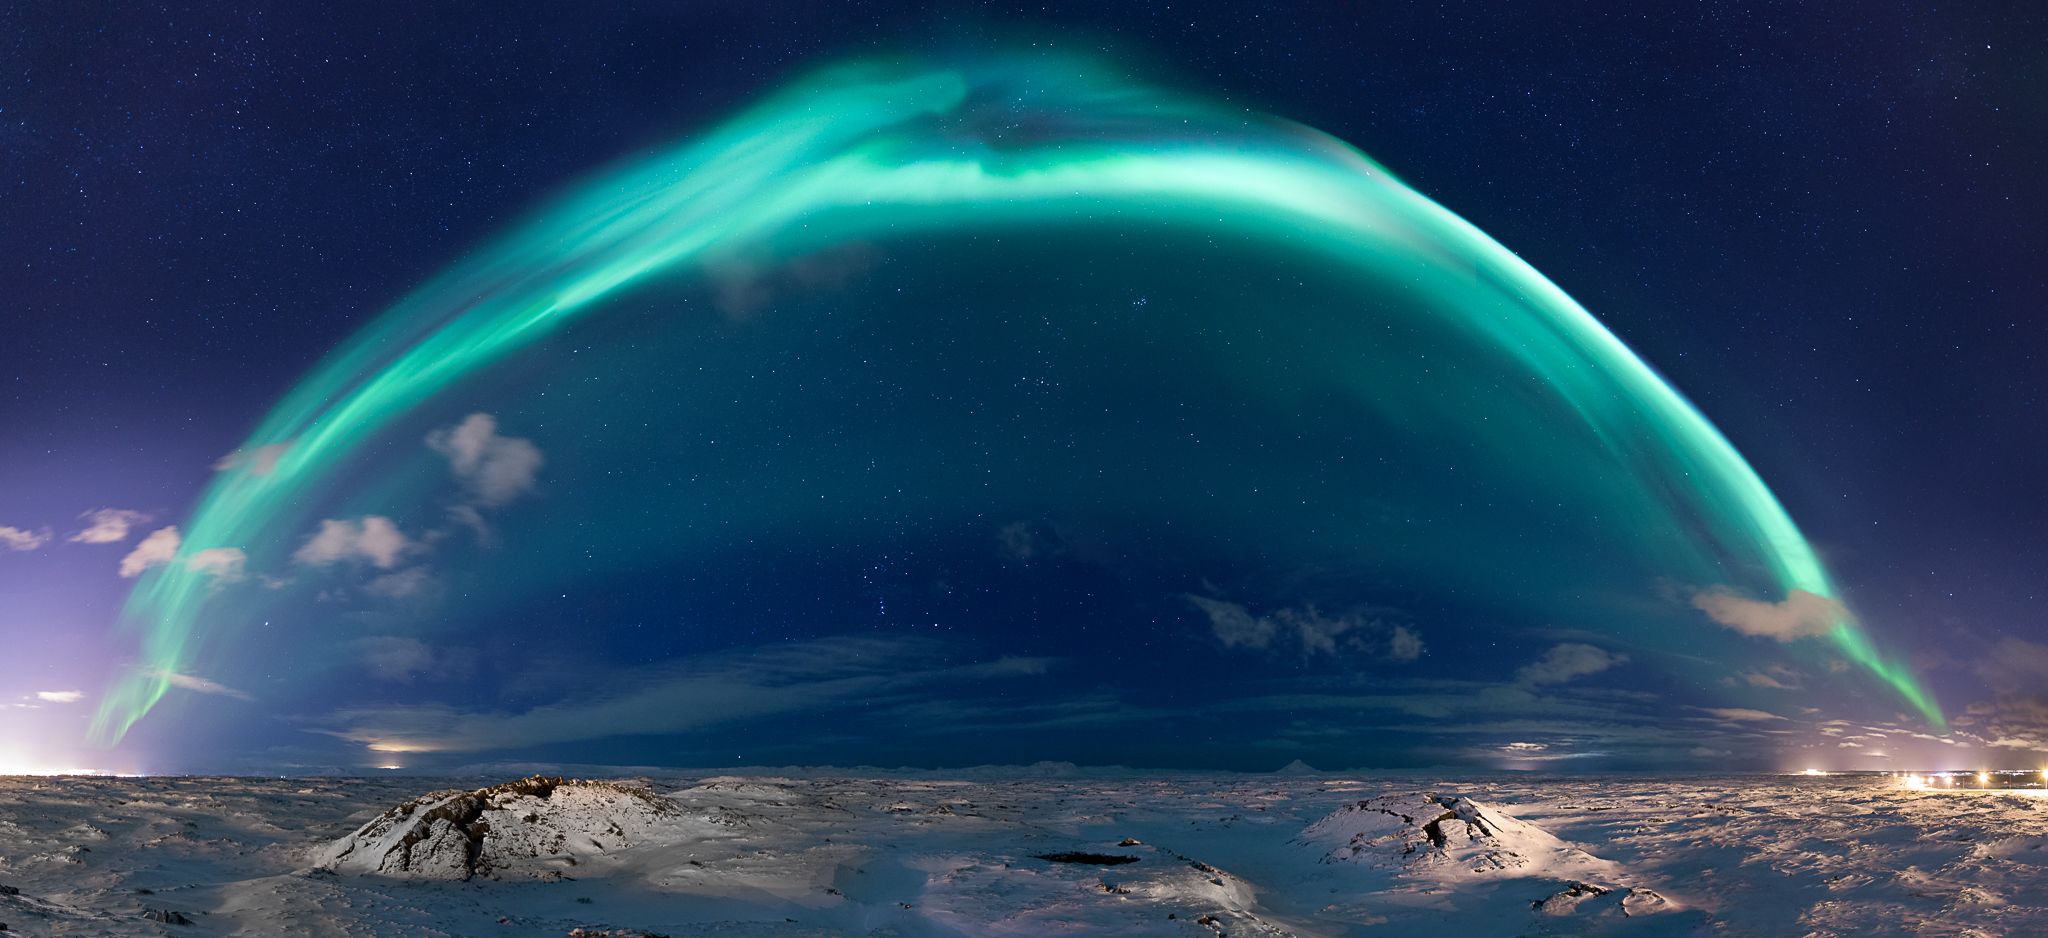 Powerful solar storm sparks stunning aurora around the world